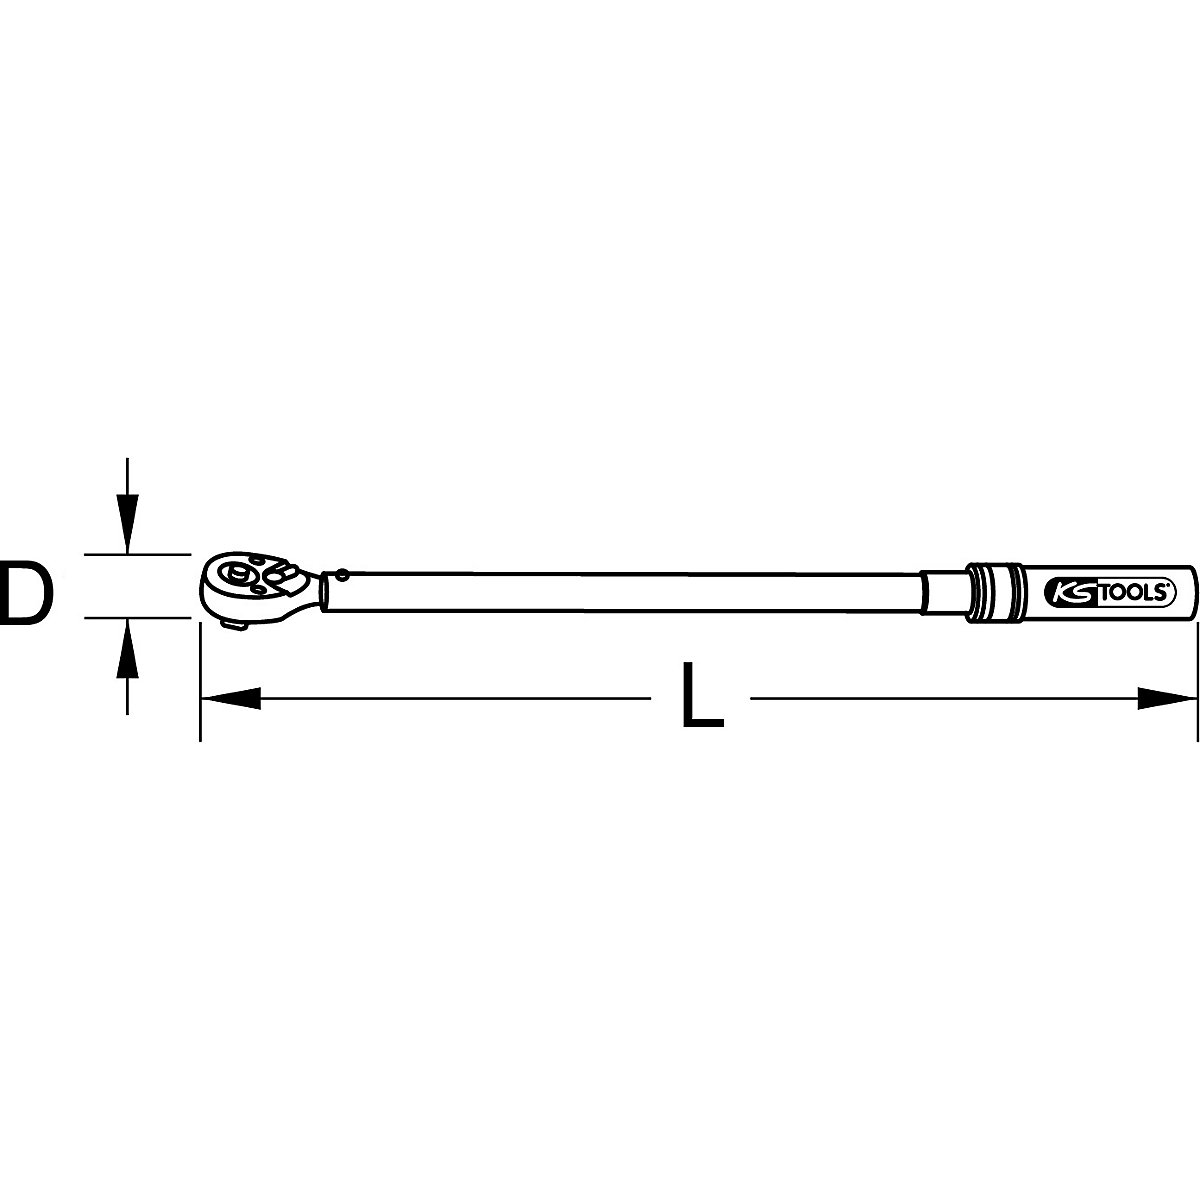 Chiave dinamometrica per settore industriale, reversibile – KS Tools (Foto prodotto 6)-5